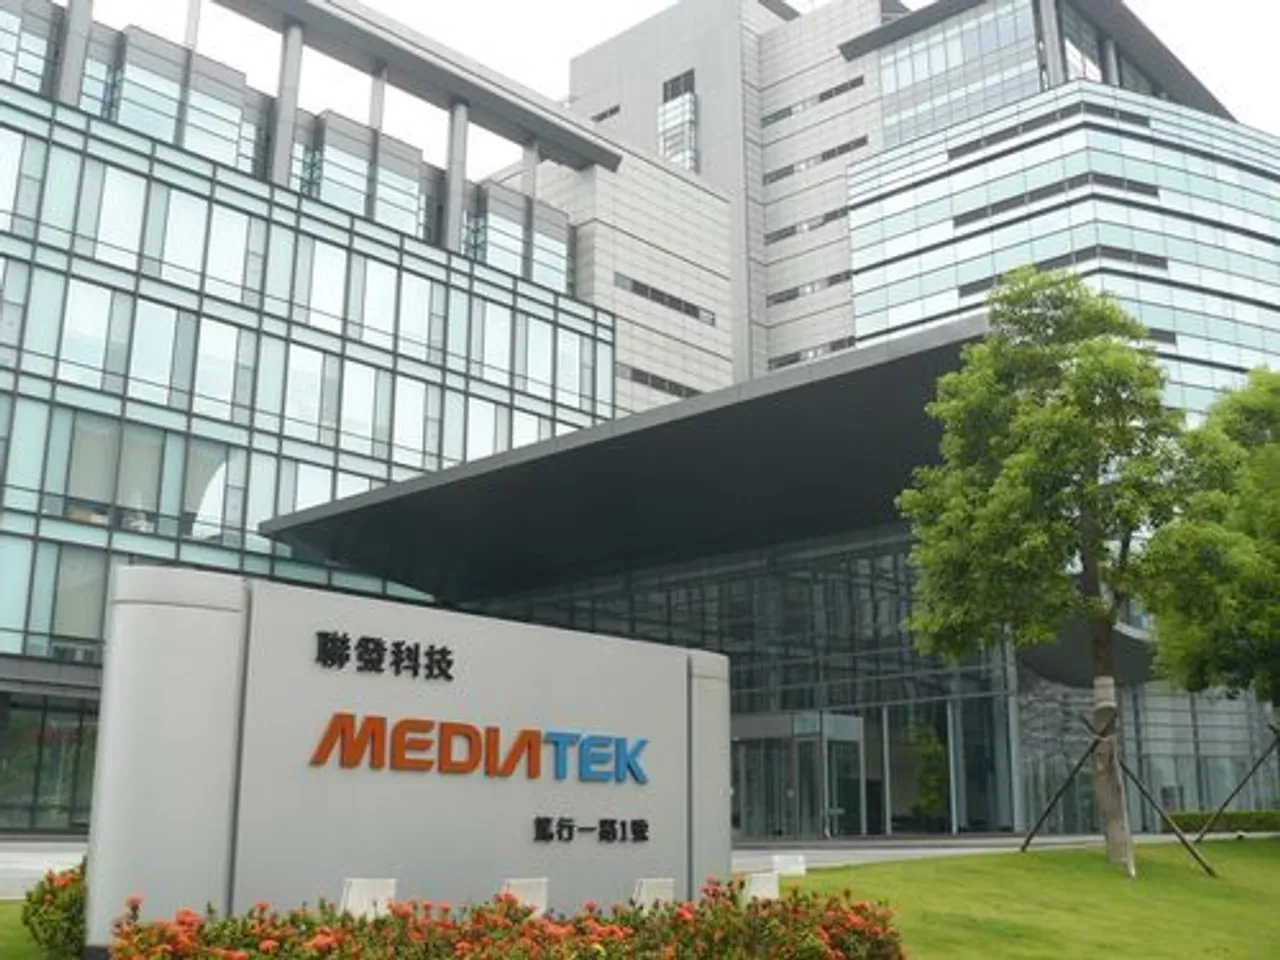 Taiwanese tech giant MediaTek